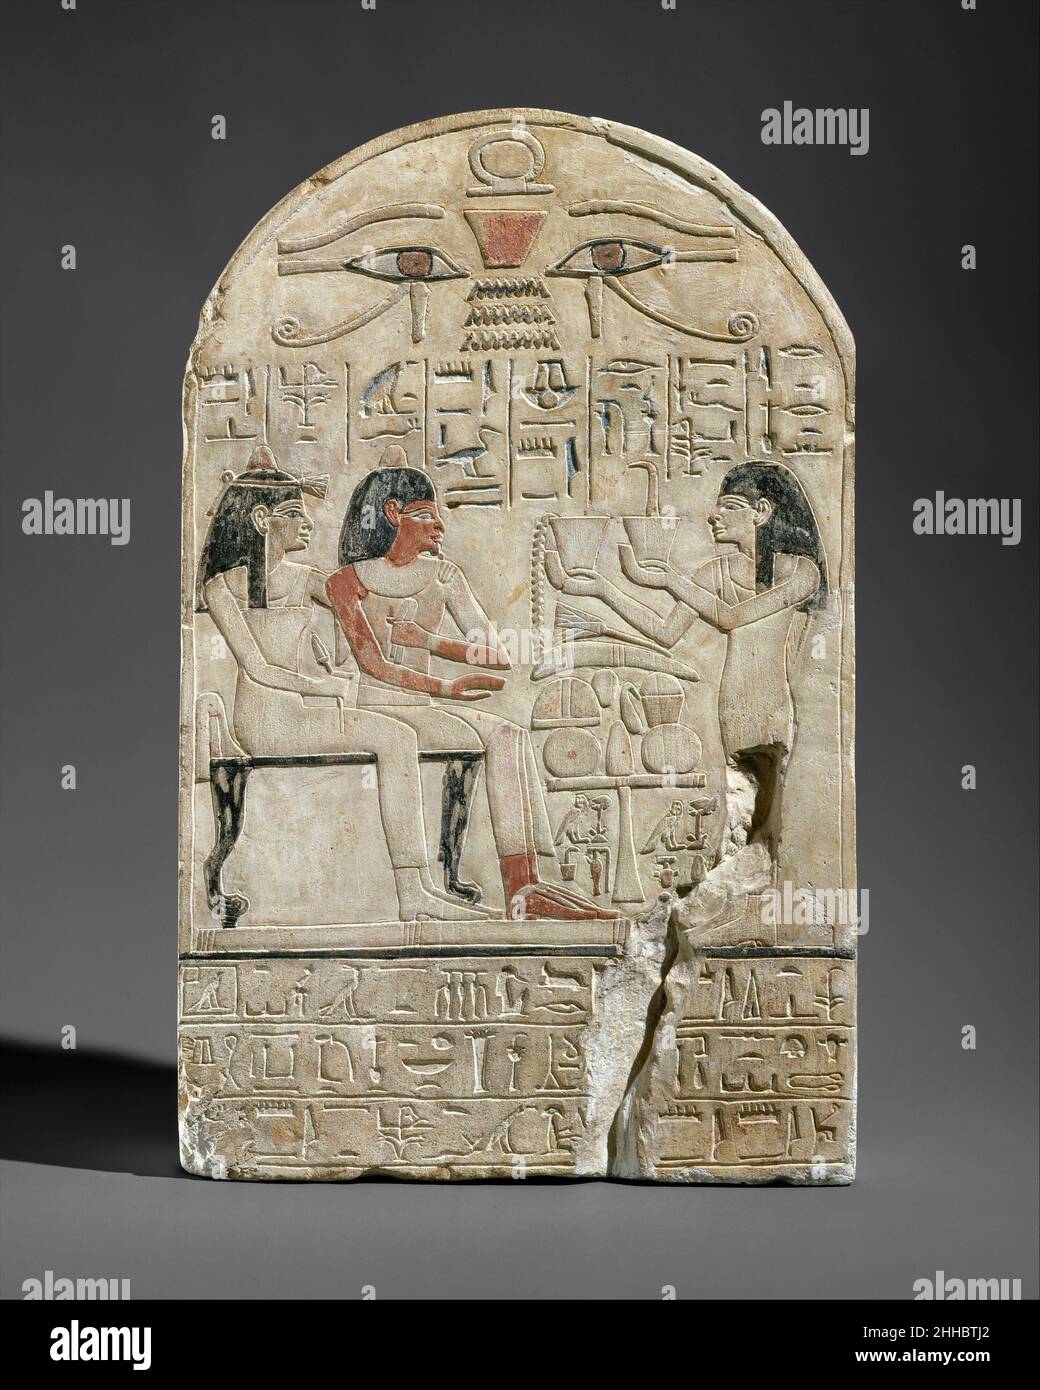 Stela del prete lettore di Amun Siamun e sua madre il cantante Amenhotep ca. 1420 a.C. nuovo Regno questa stela raffigura il sacerdote-lettore Siamun e sua madre, il cantante Amenhotep, ricevendo offerte da 'sua sorella' (probabilmente sua moglie), la cantante Iretnofret. Stela del prete lettore di Amun Siamun e sua madre il cantante Amenhotep 555406 Foto Stock